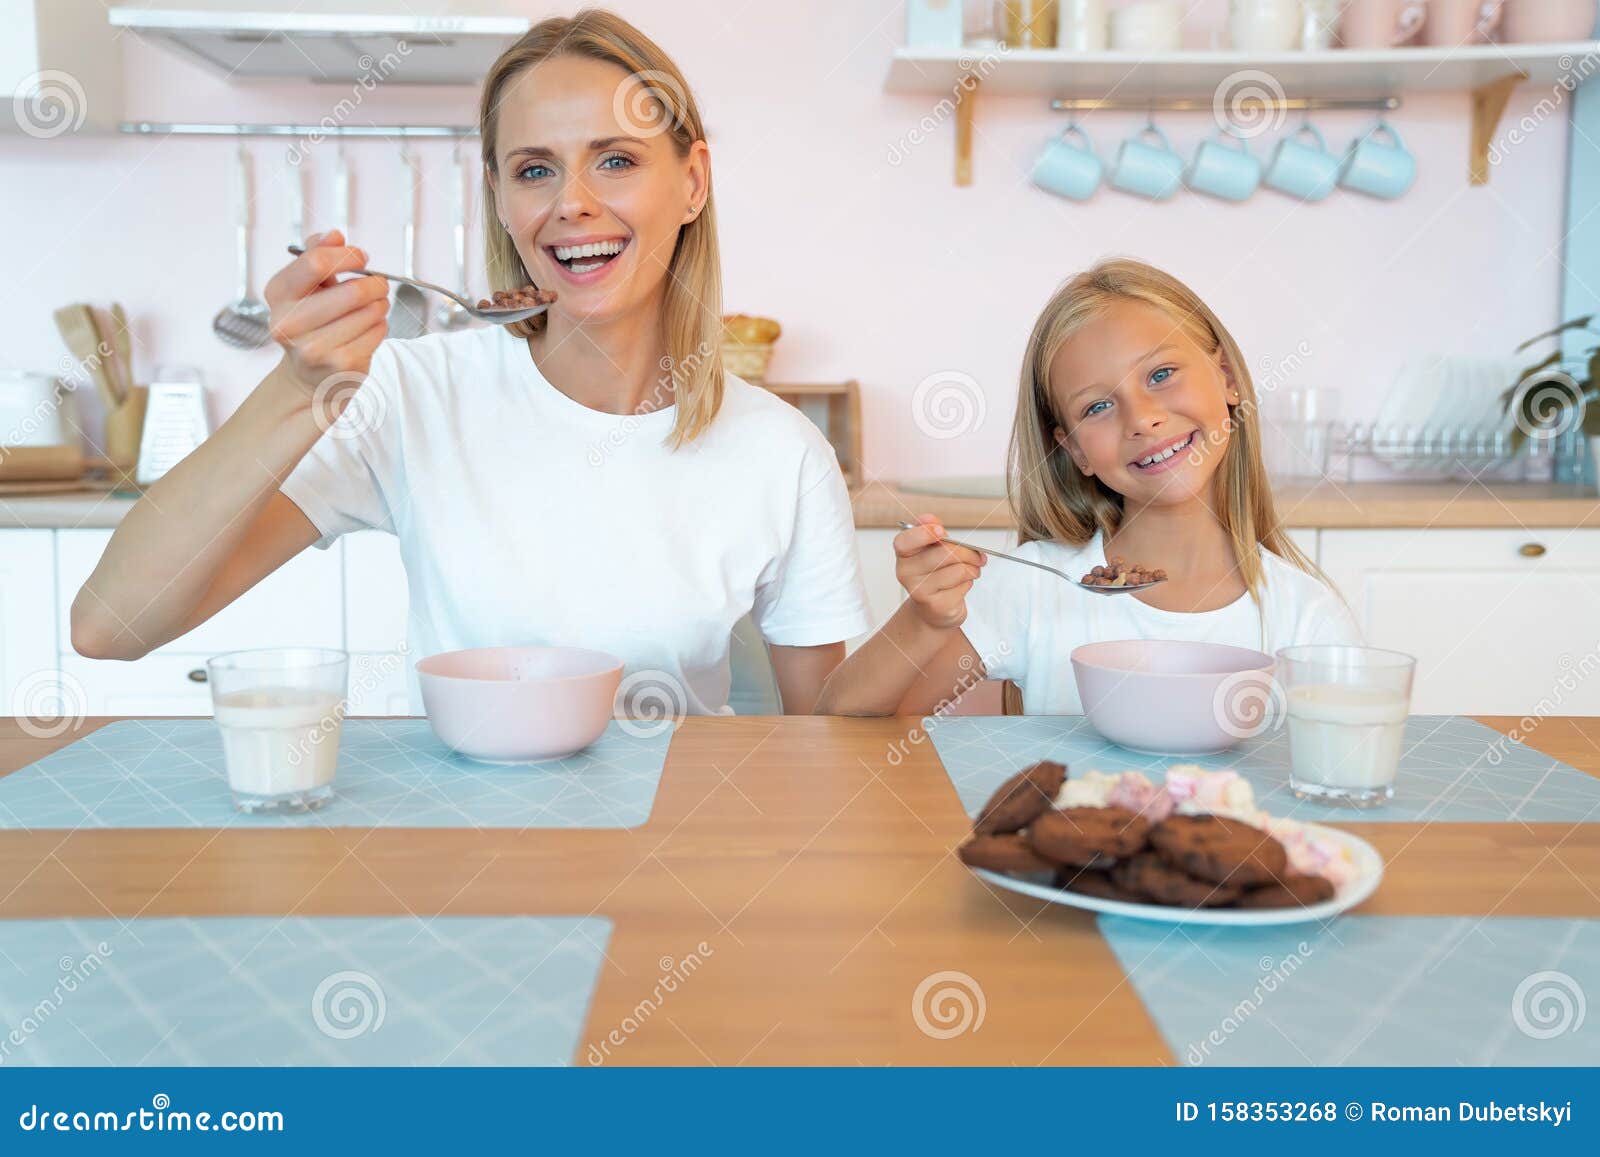 Пока дочки не было дома. Мама и дочка едят ложкой. Мама с дочкой едят шоколадку. Мама с дочкой едят роллы. Мама учит дочку есть с ложки.